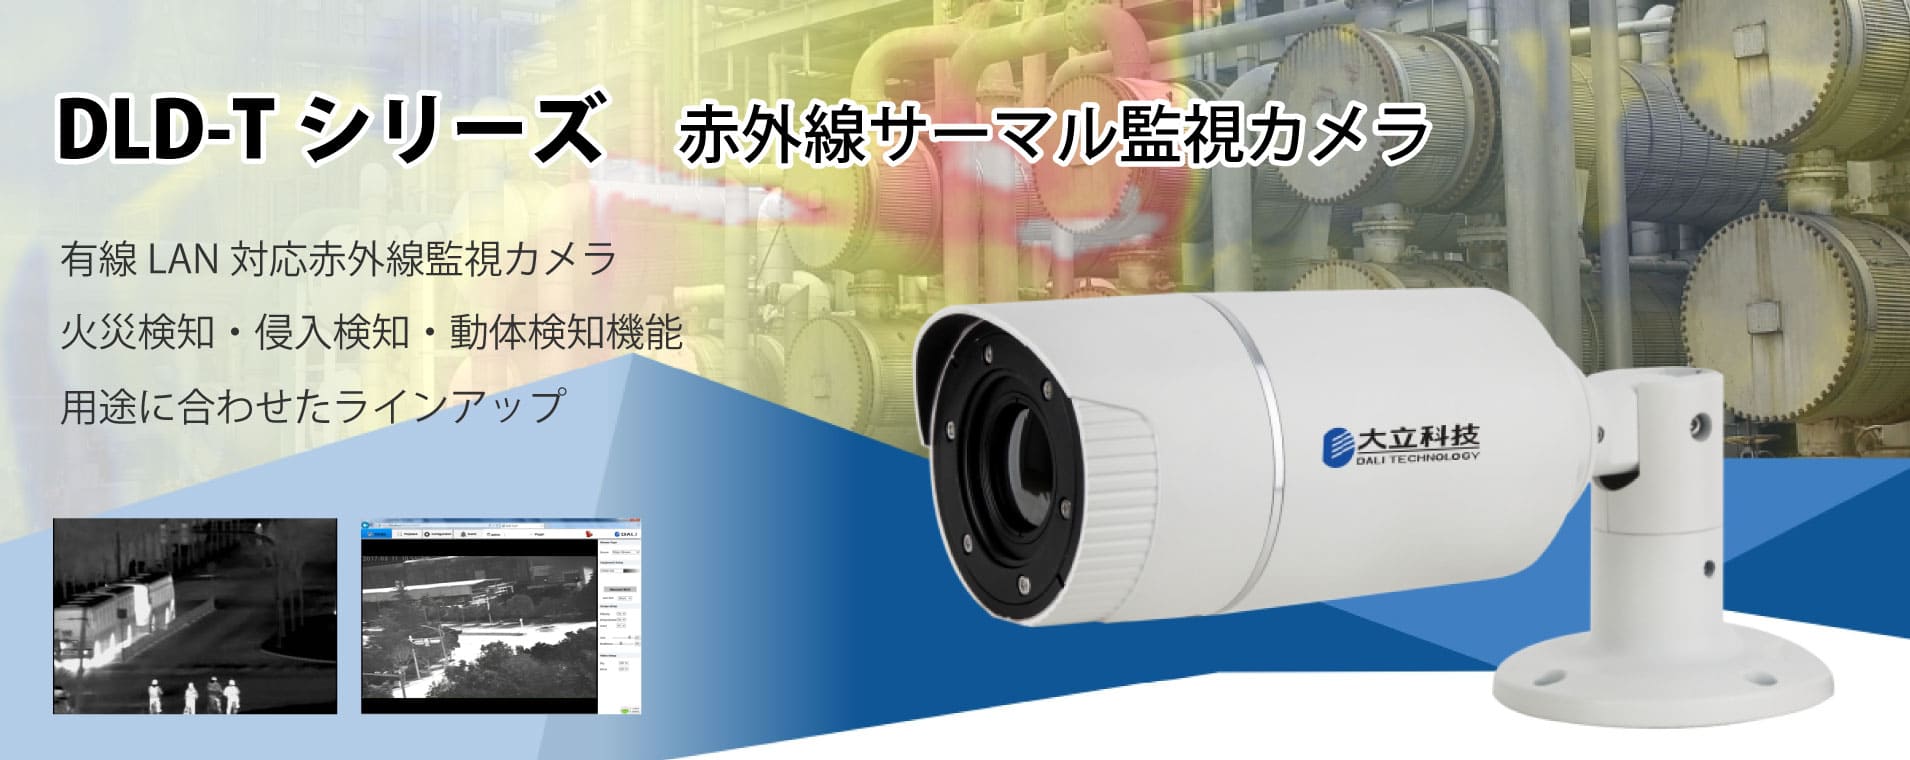 熱画像監視ネットワークカメラ DLD-TXXシリーズ